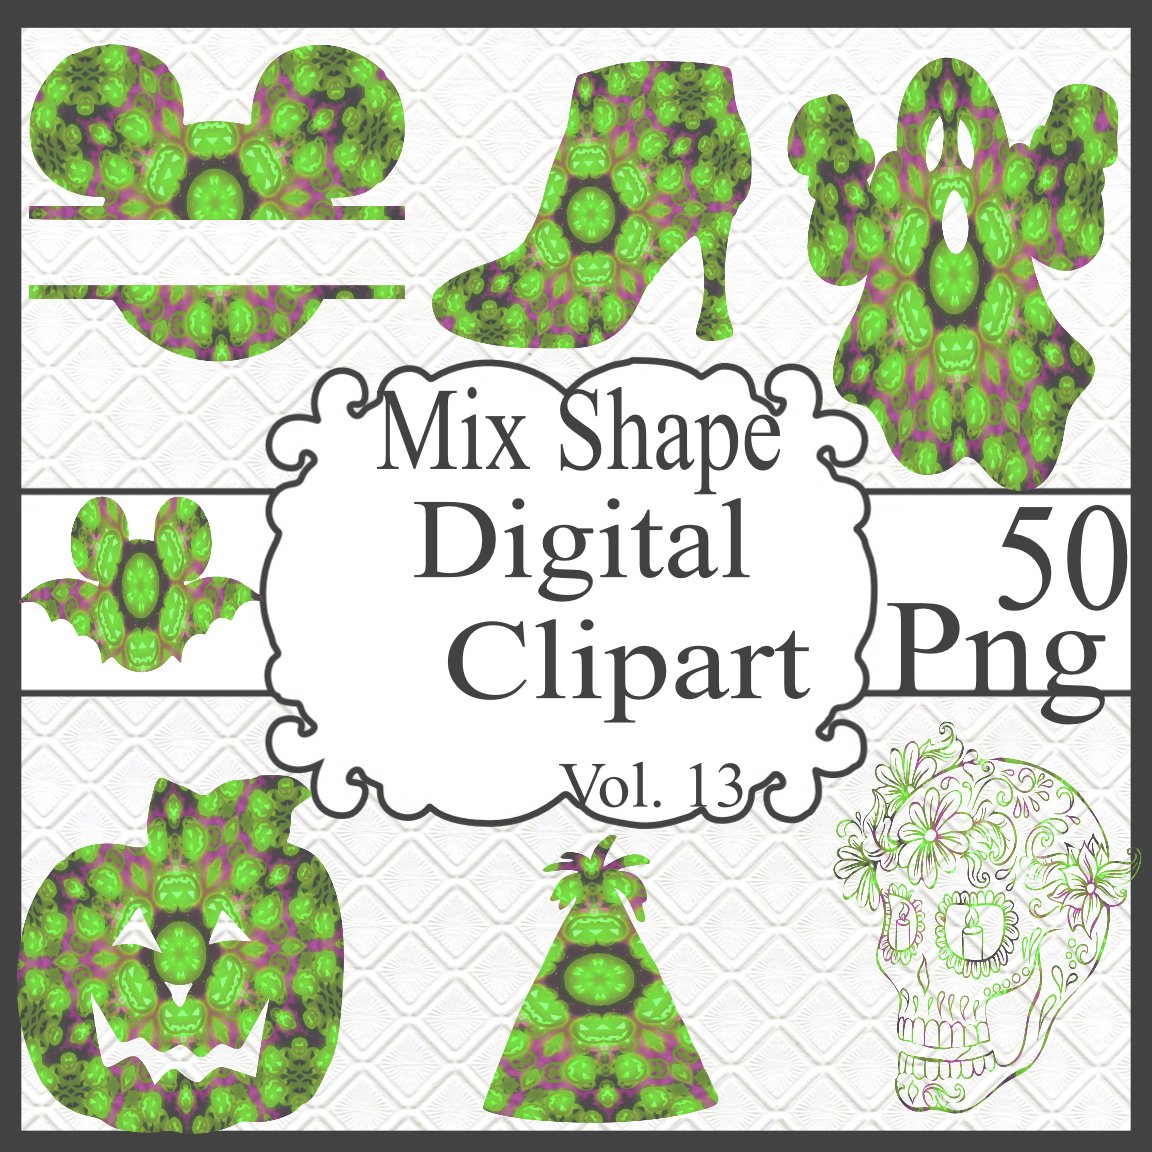 Mix Shapes Digital Cliparts Vol. 13